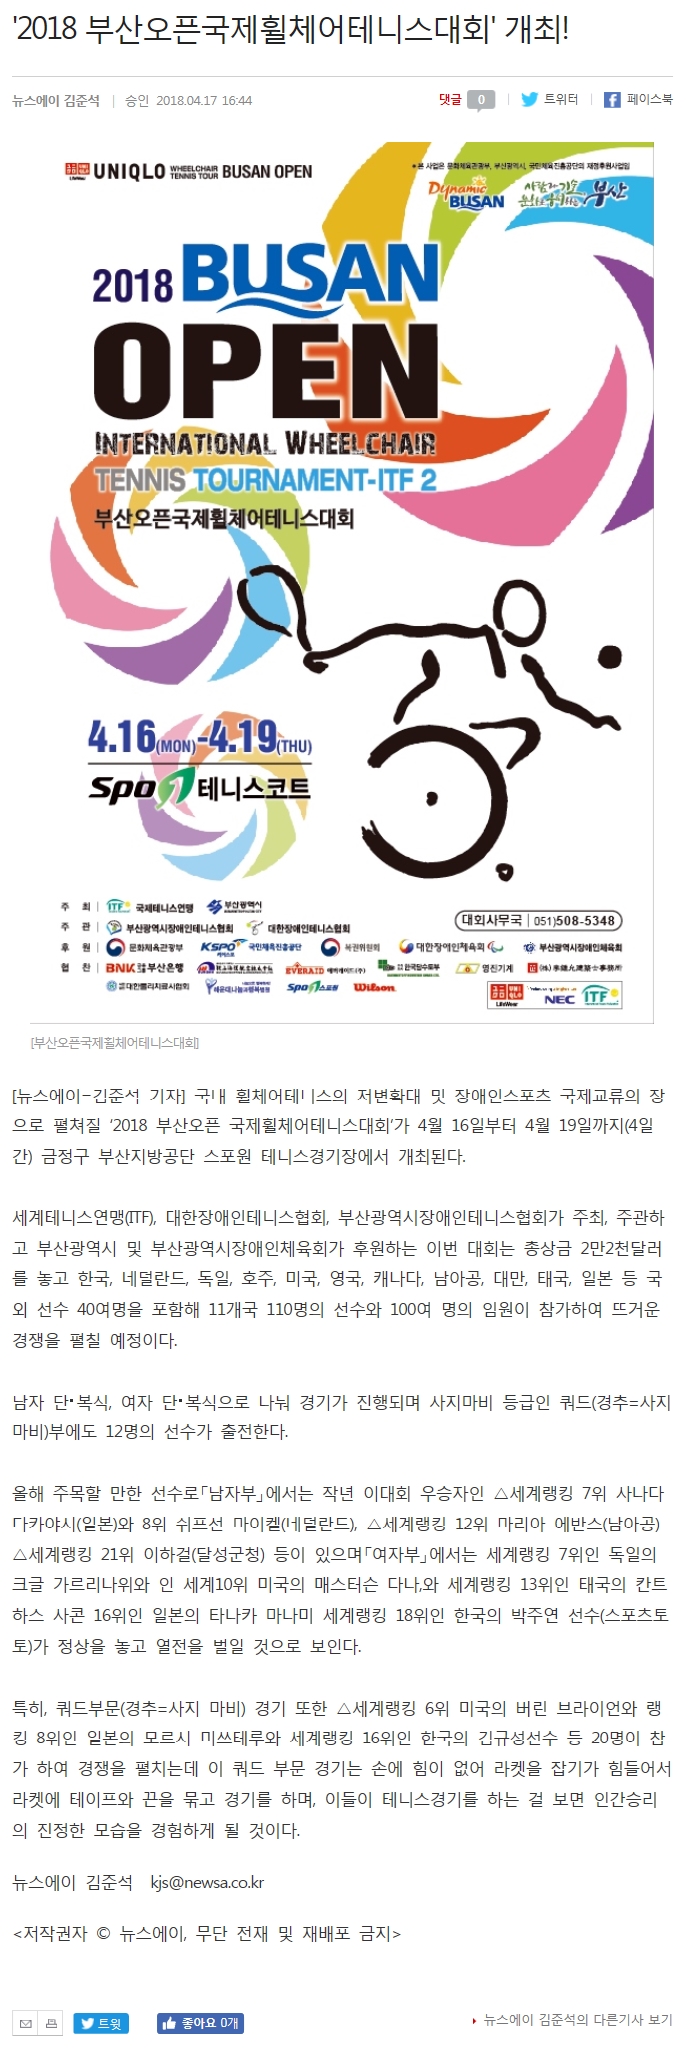 [뉴스에이 4. 17] 2018 부산오픈국제휠체어테니스대회 개최  